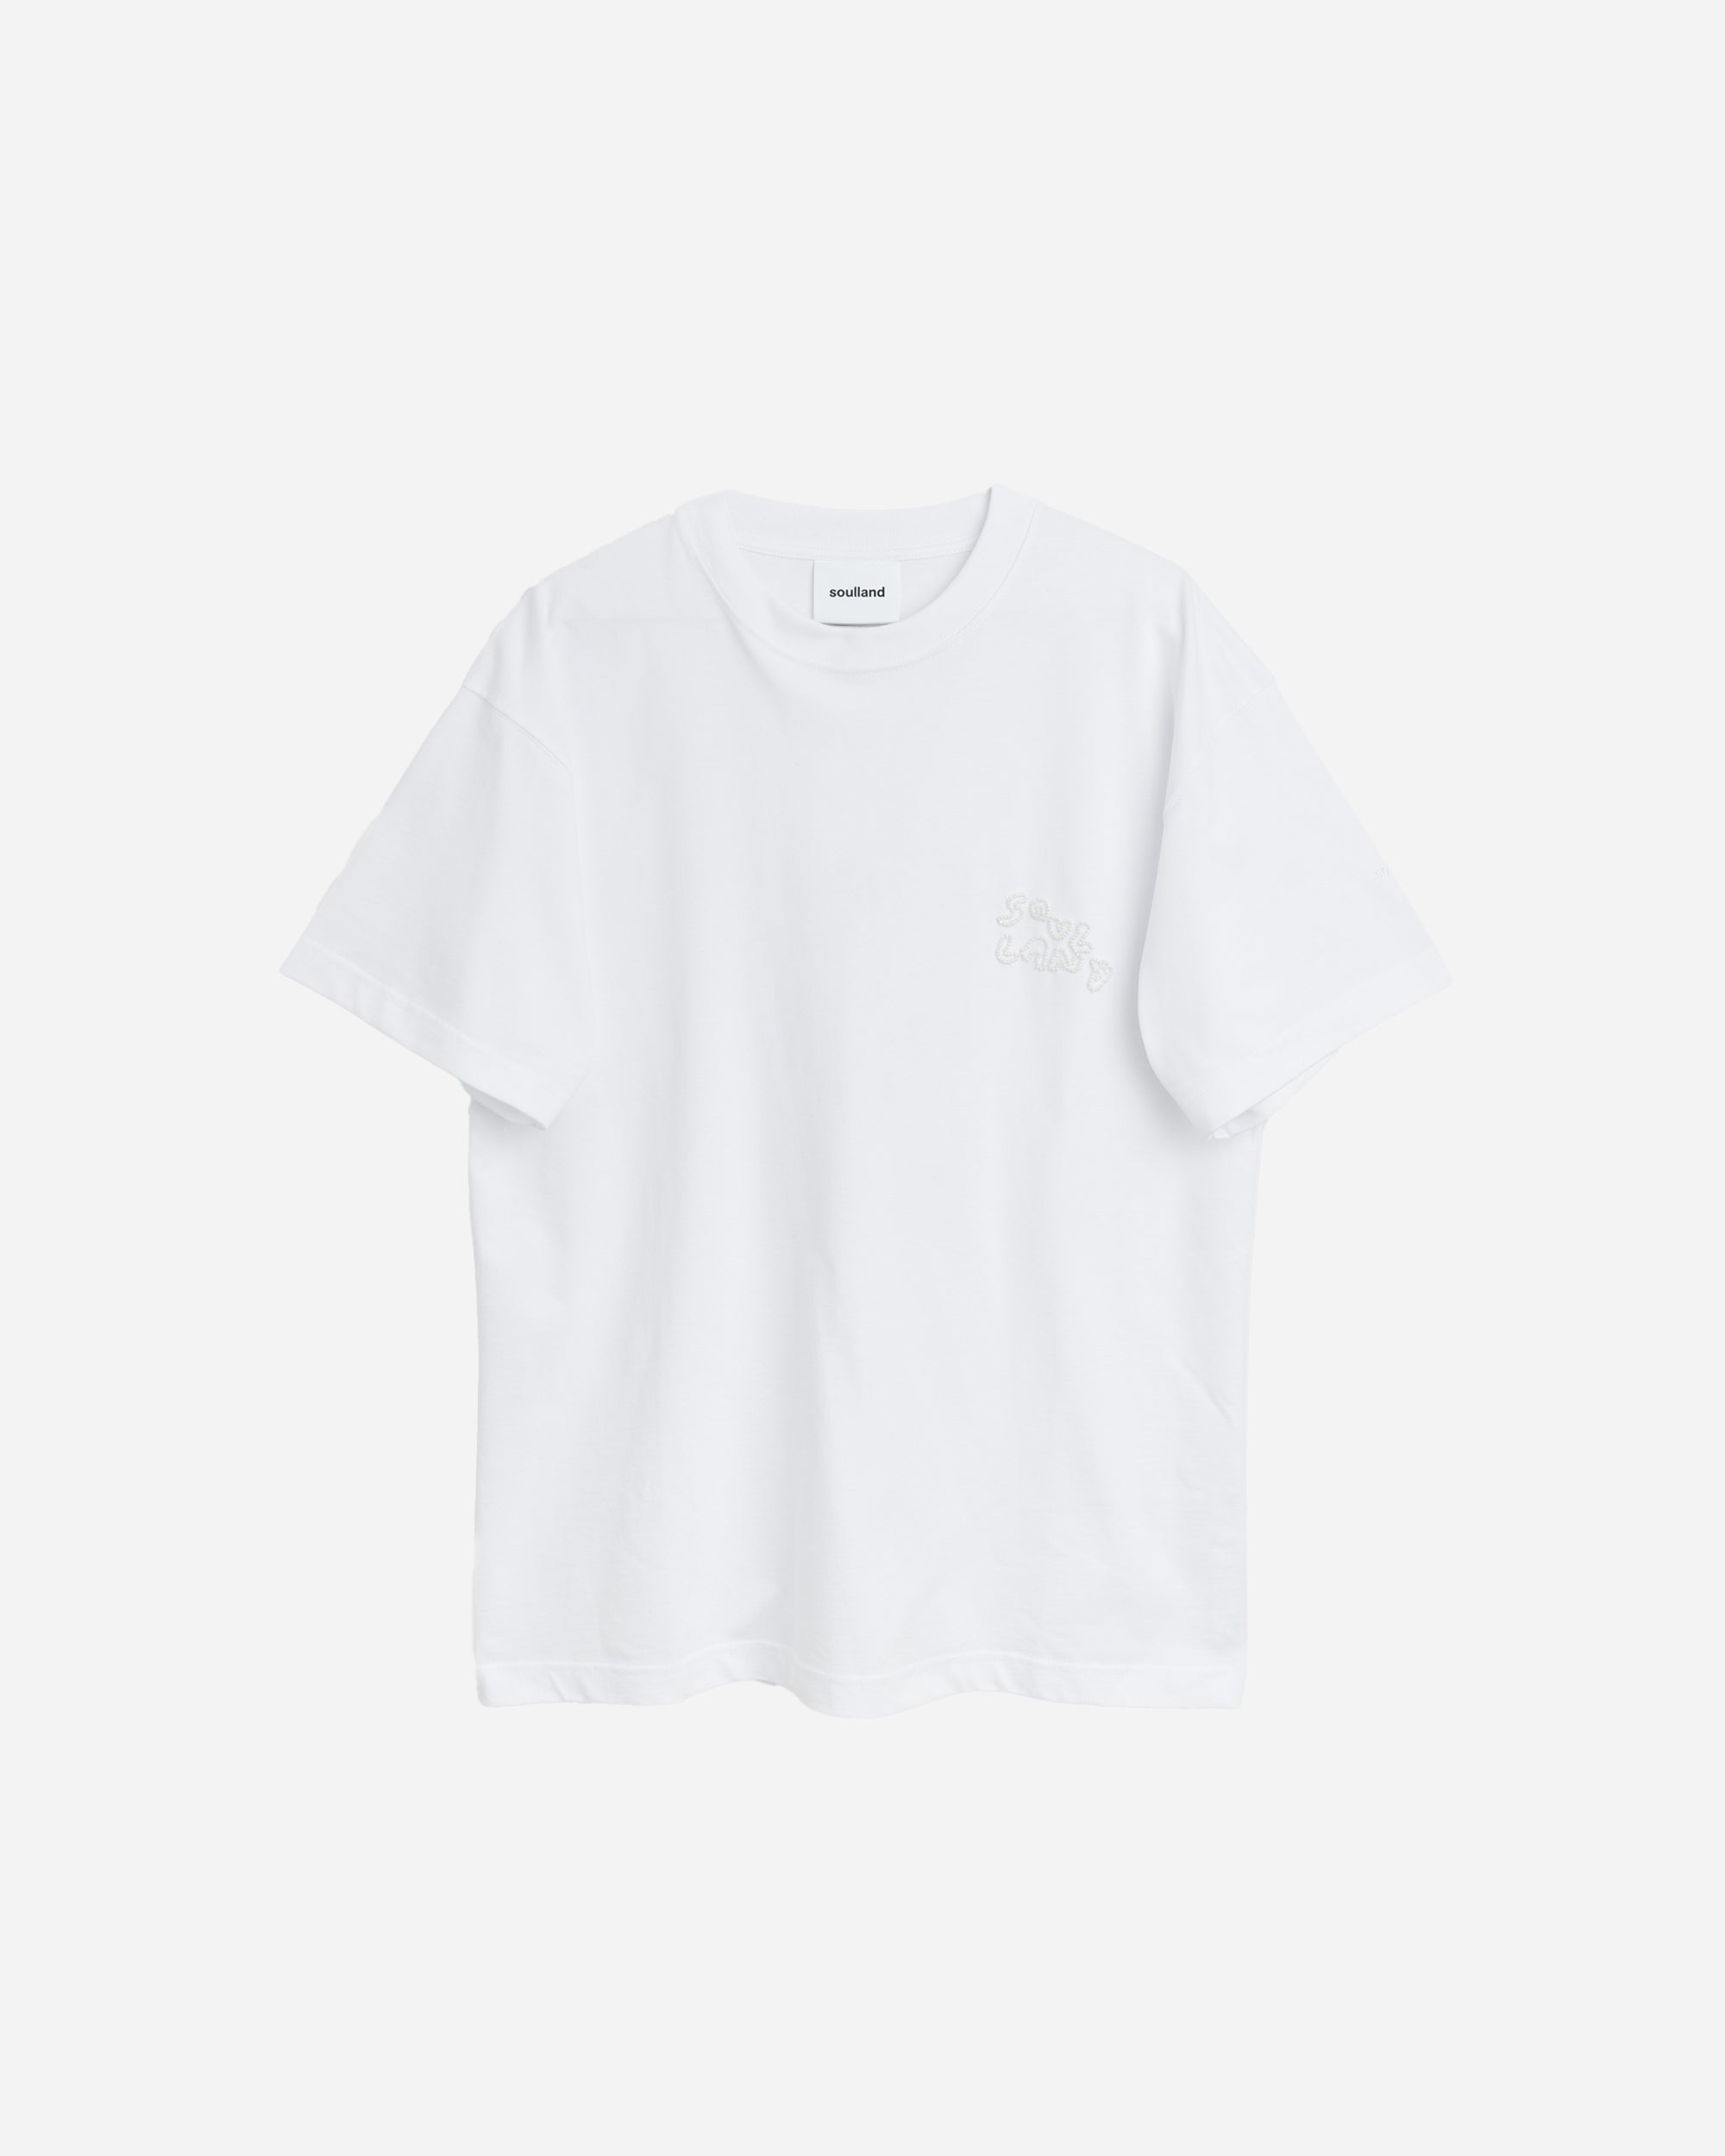 Soulland Kai T-shirt Beaded Logo White  32070-1063